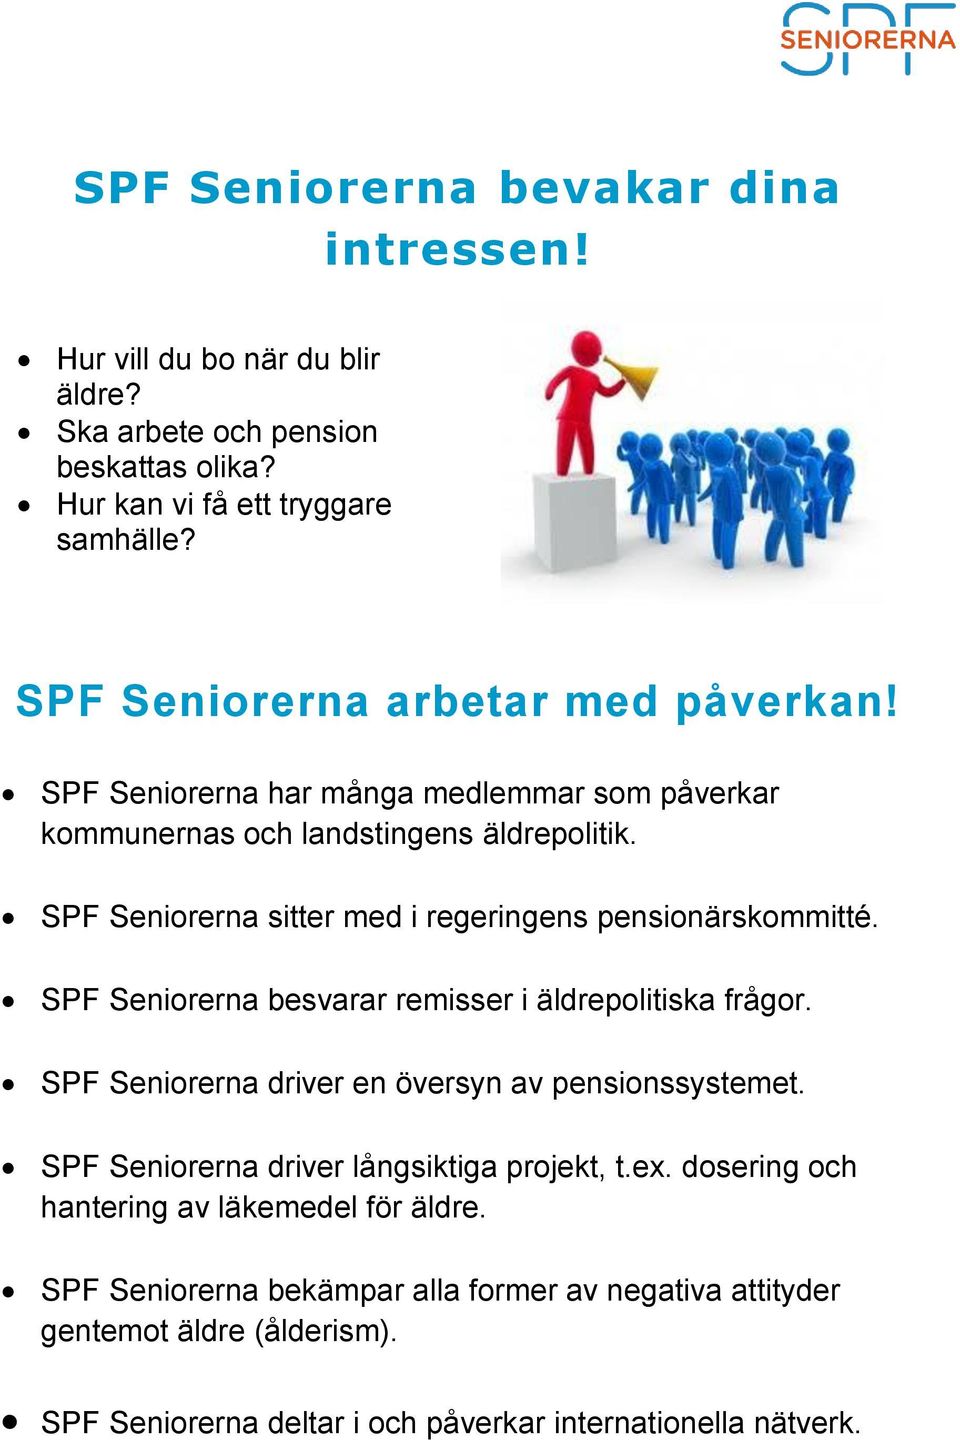 SPF Seniorerna sitter med i regeringens pensionärskommitté. SPF Seniorerna besvarar remisser i äldrepolitiska frågor. SPF Seniorerna driver en översyn av pensionssystemet.